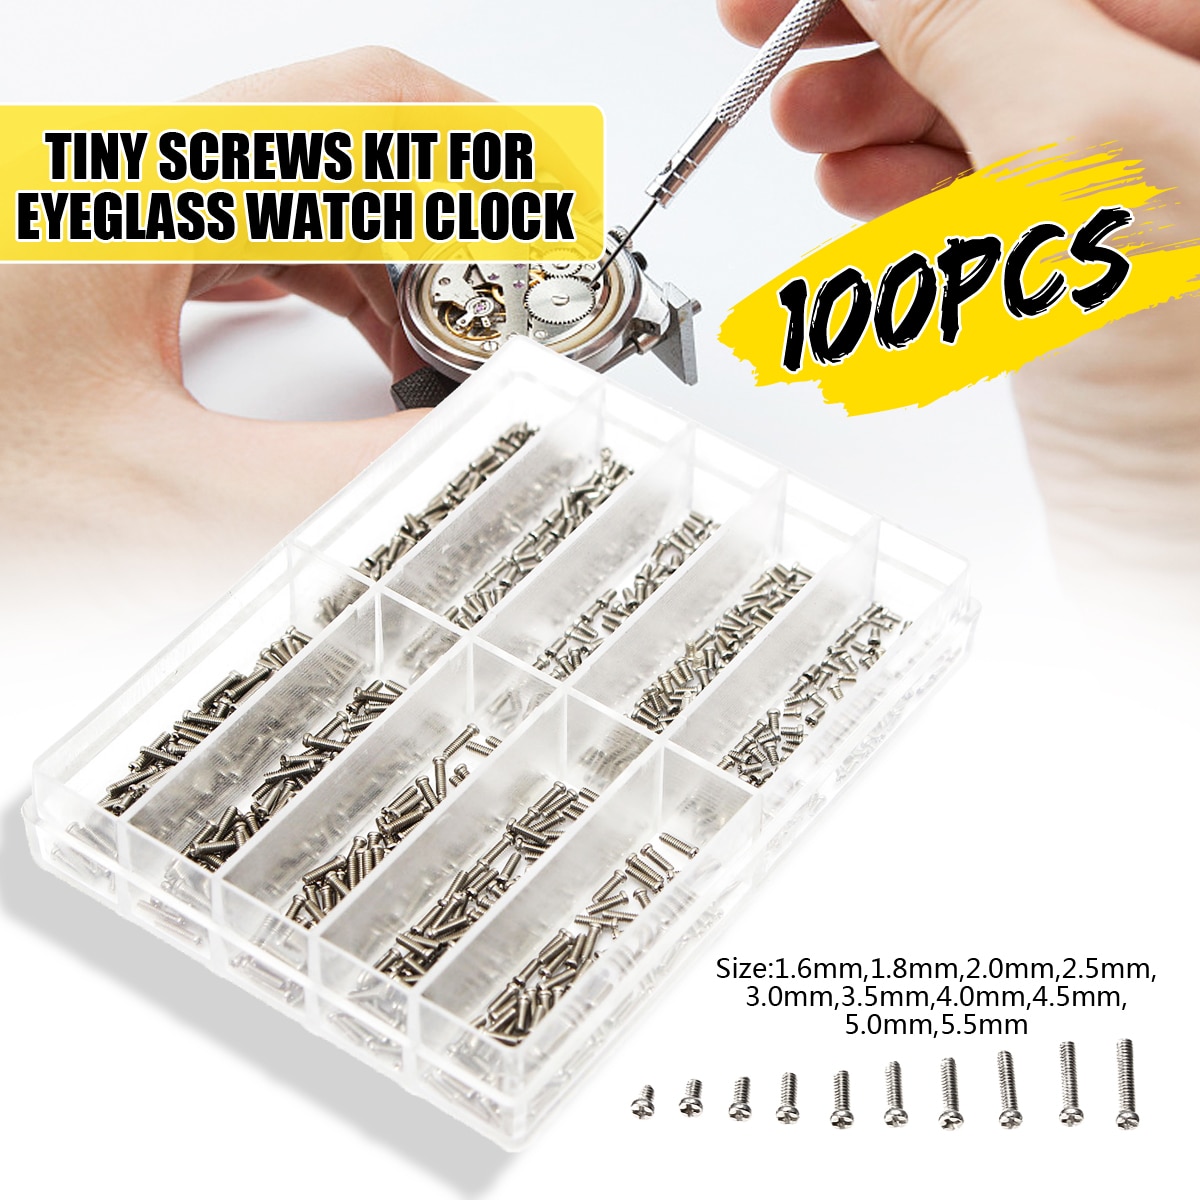 Arrvial! 1000 stks/set Diverse Schroeven Voor Horloge Klok Bril Horlogemaker Reparatie Deel Tool